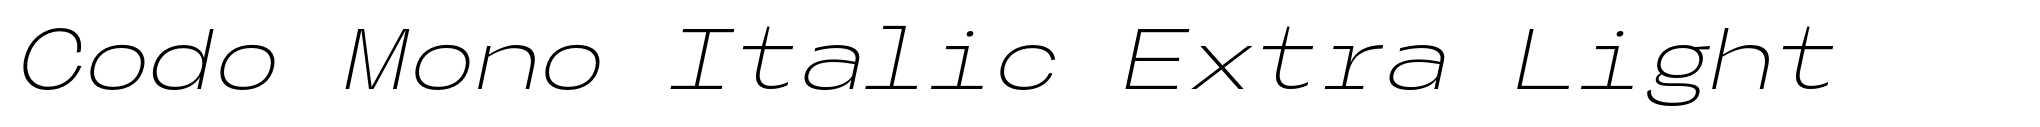 Codo Mono Italic Extra Light image